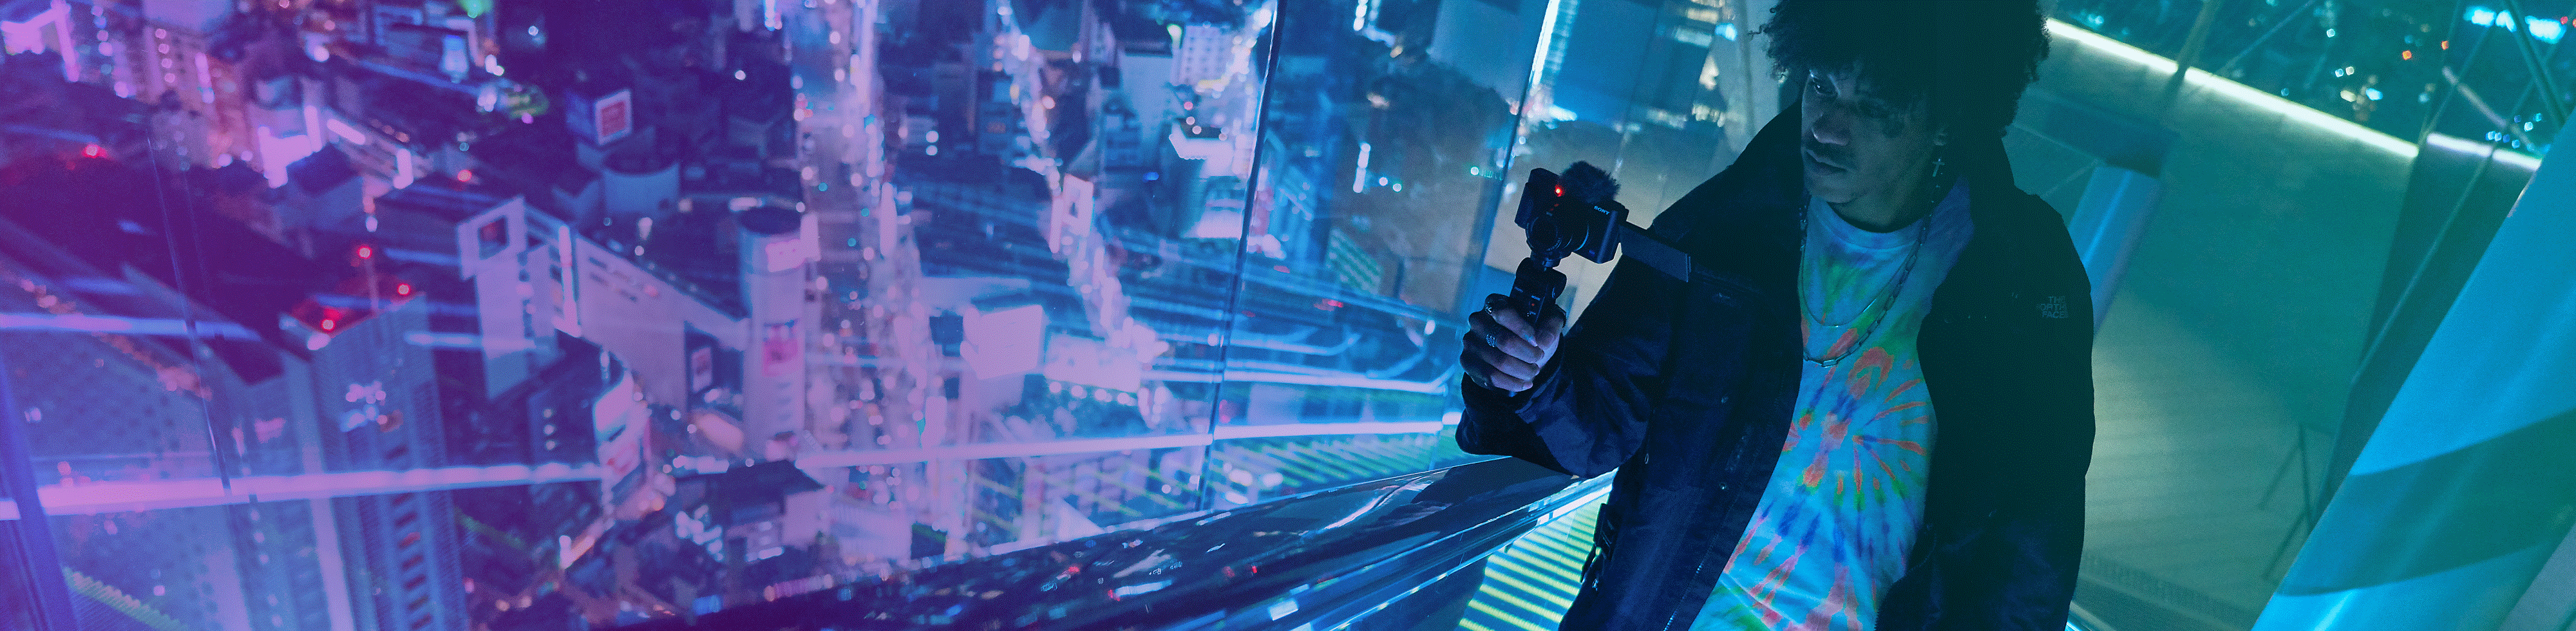 Hombre grabando una vista nocturna en un edificio alto